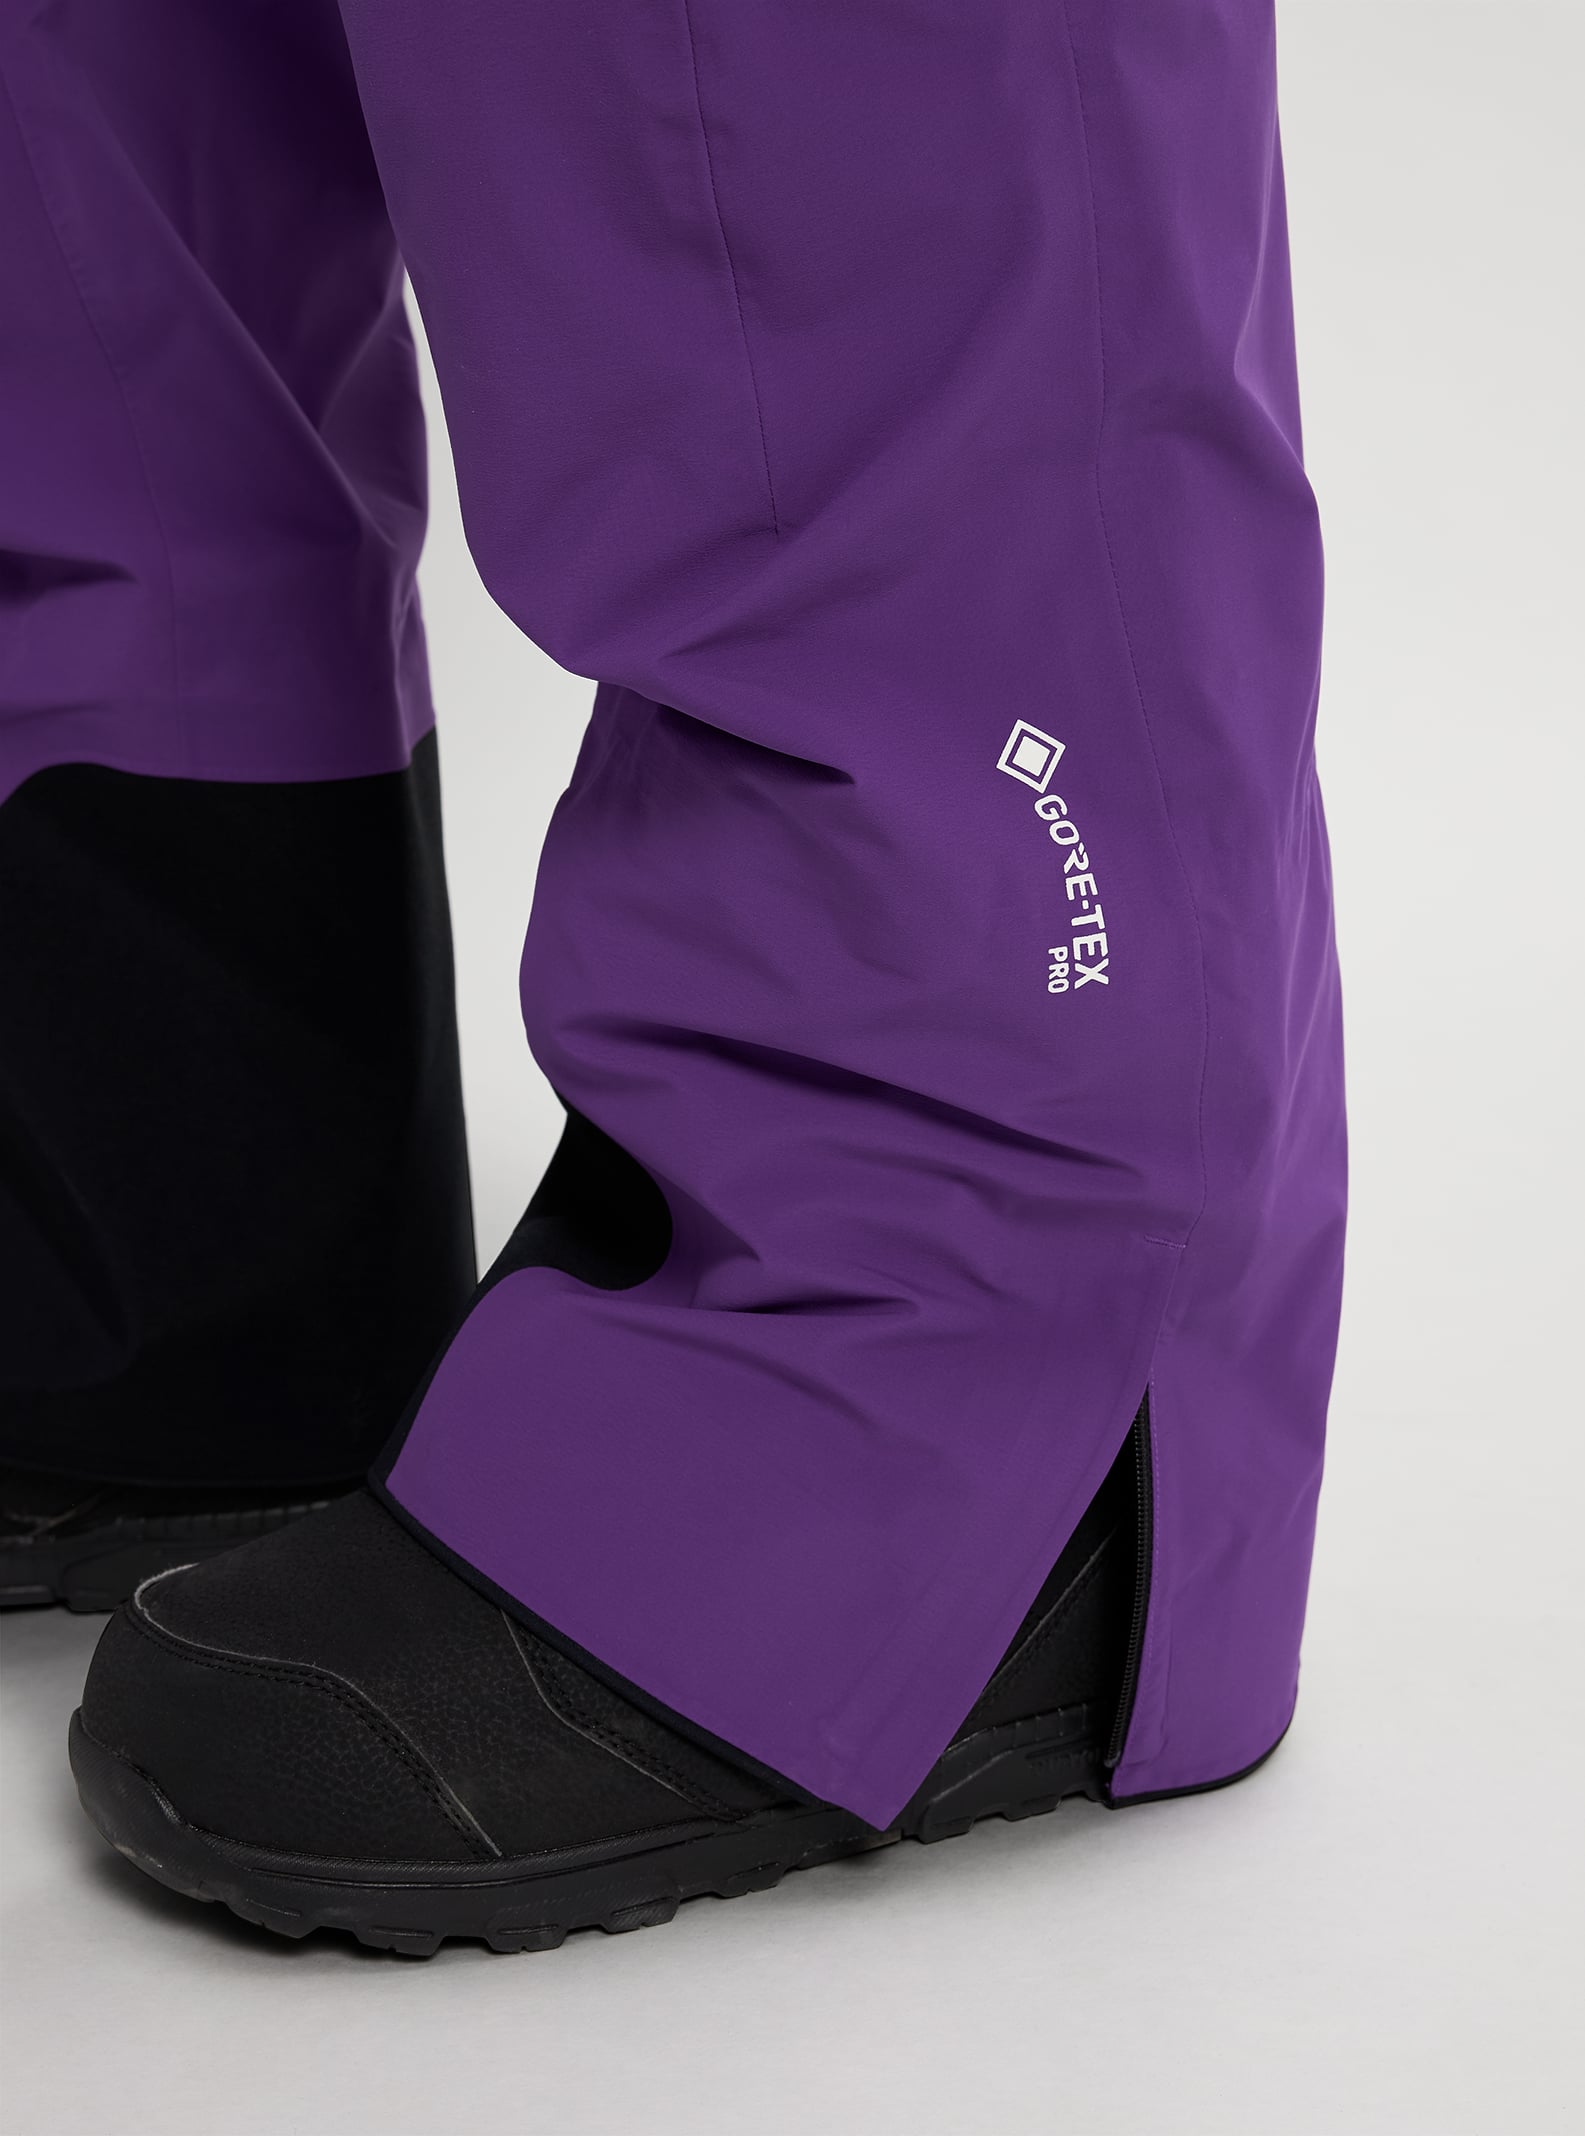 Burton [ak] Japan GORE-TEX Pro Guide Hi-Top Pant 2022 Royal purple